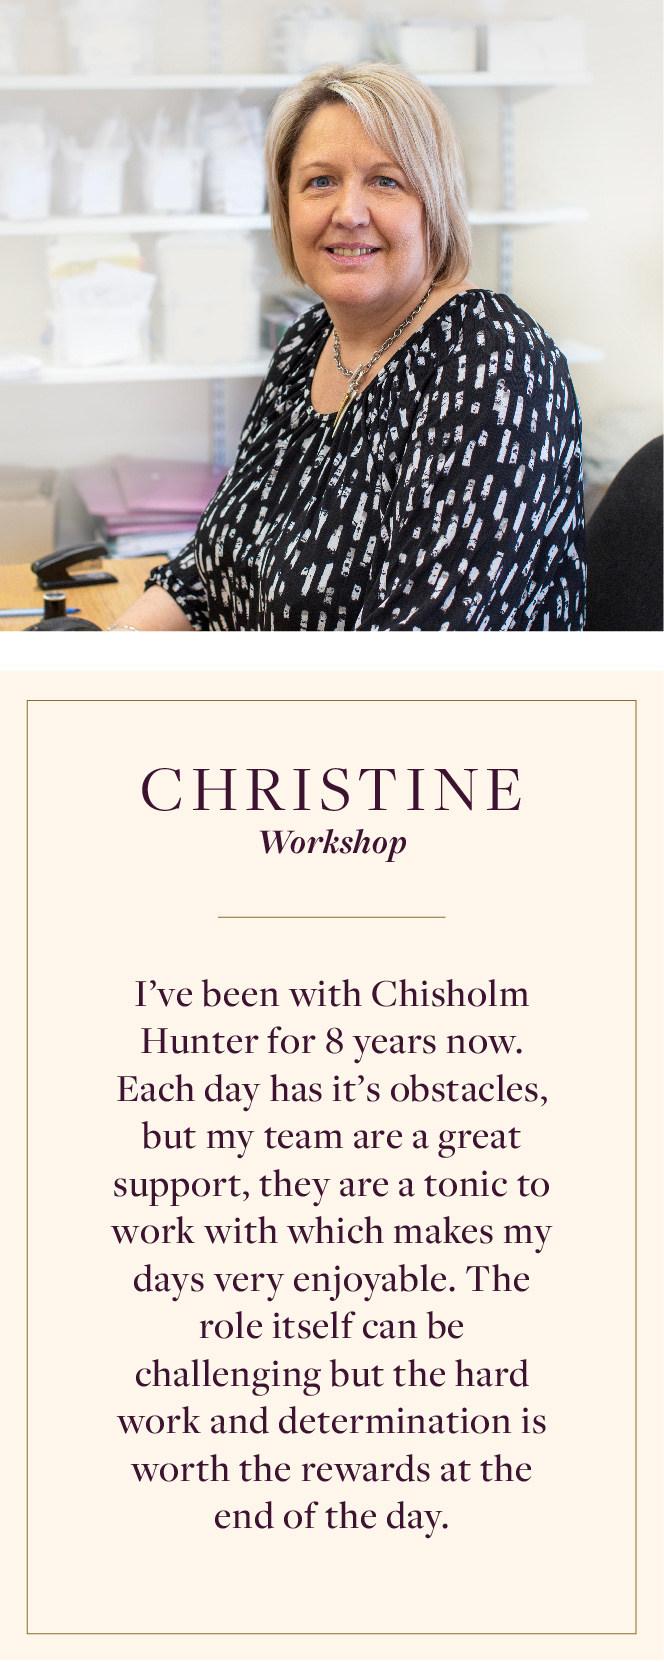 “Christine